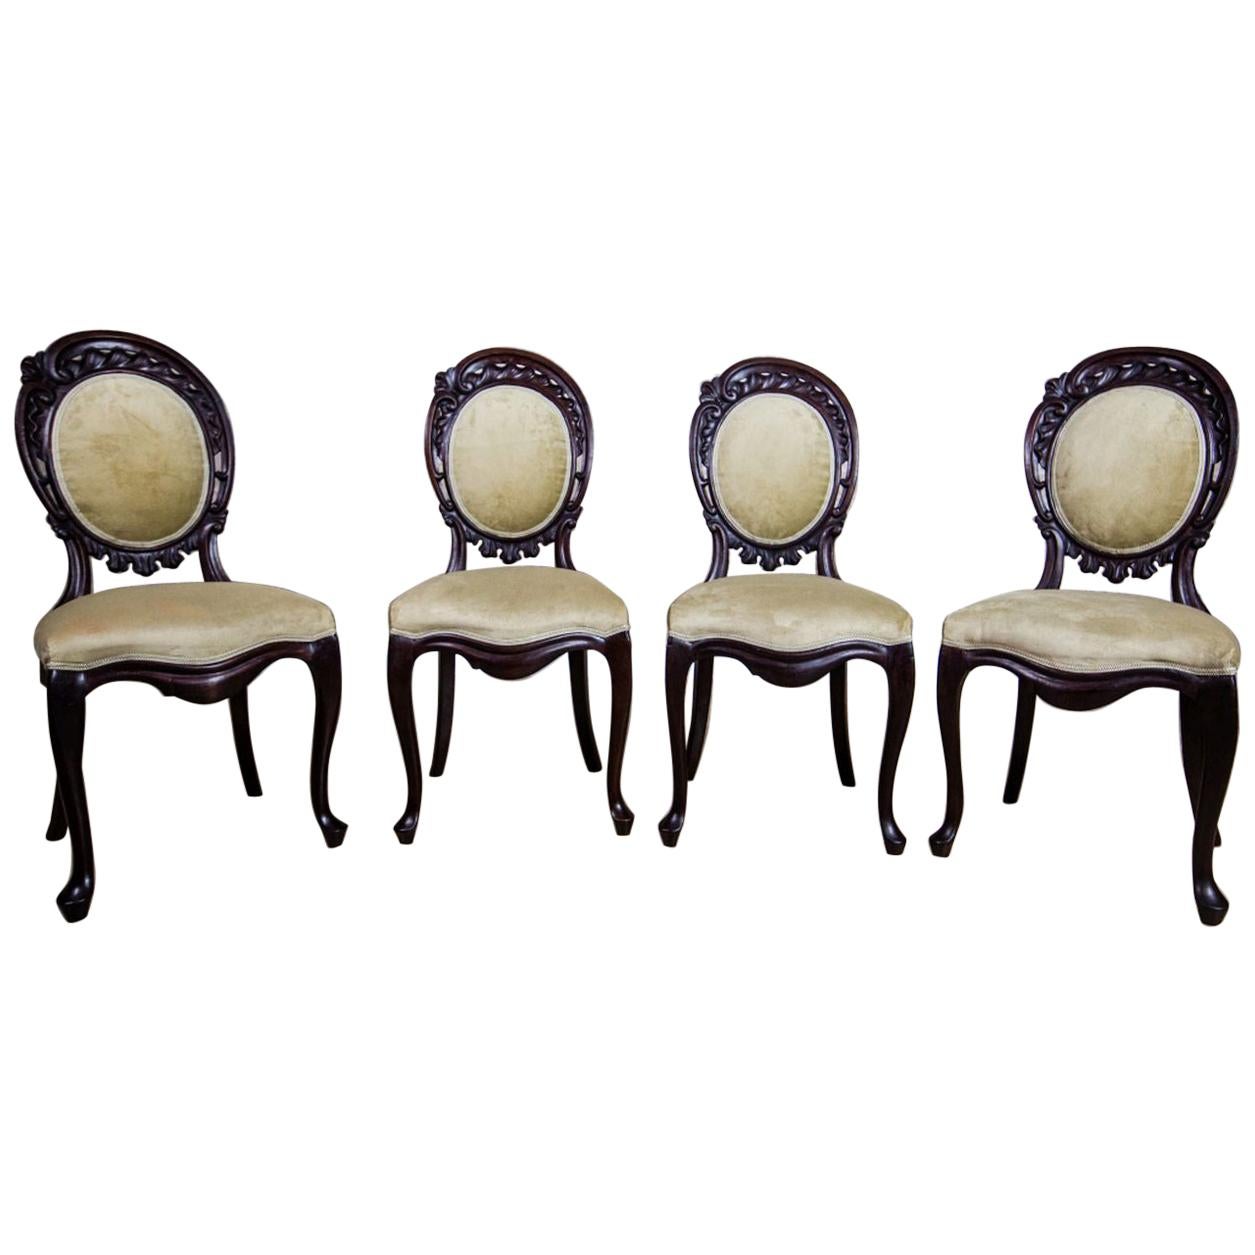 Louis Philippe Chairs, circa 1860